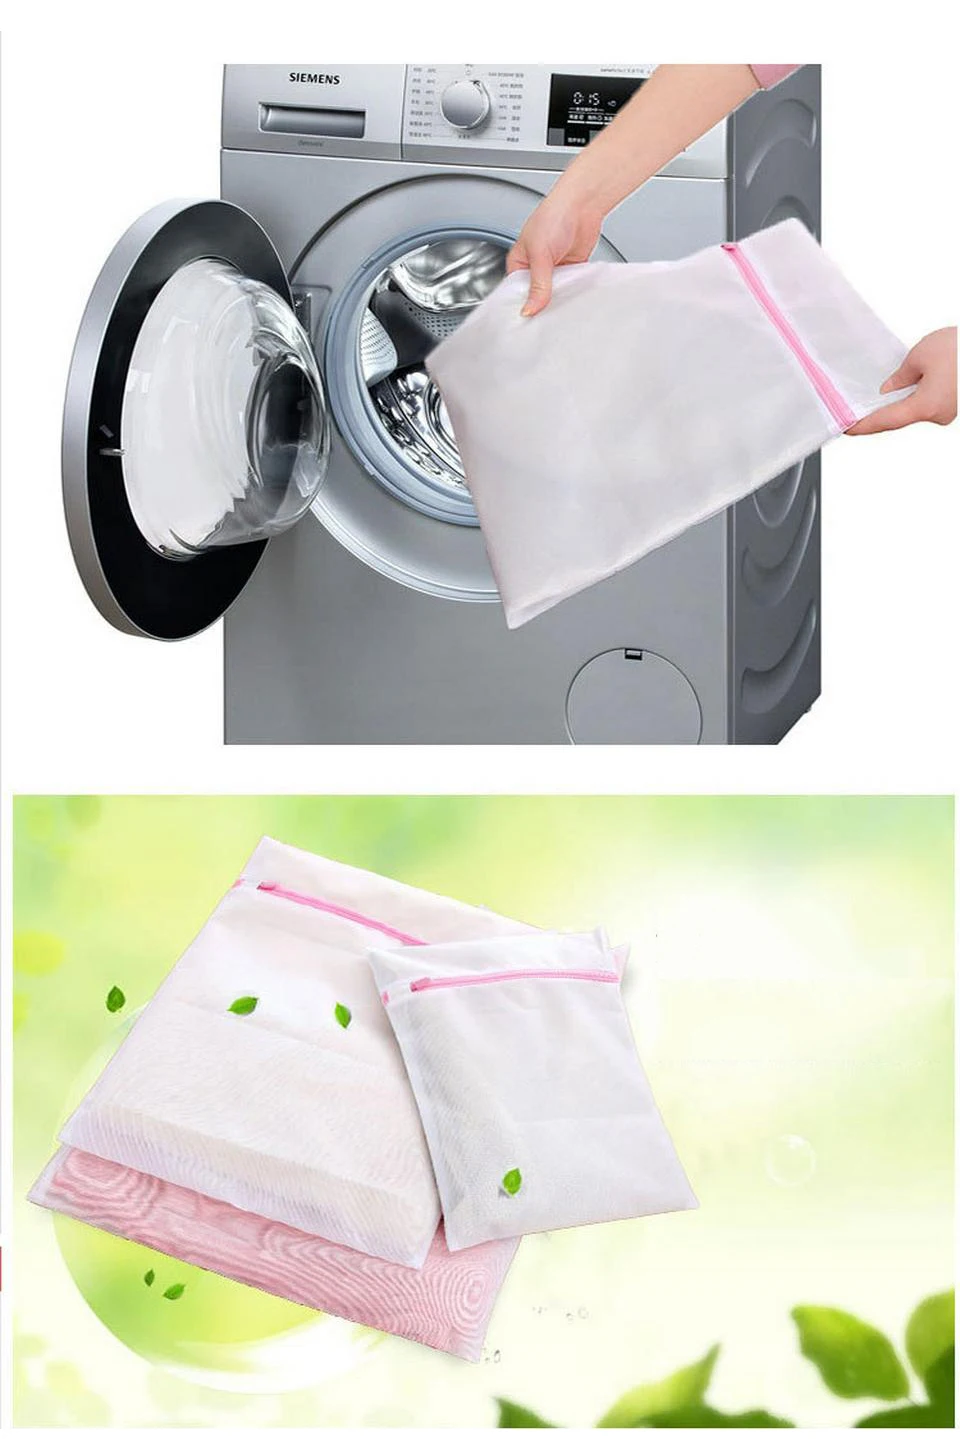 3 размера складываемая корзина для нижнего белья бюстгальтер, носки, нижнее белье одежда стиральная машина защиты сетчатые мешки молнии